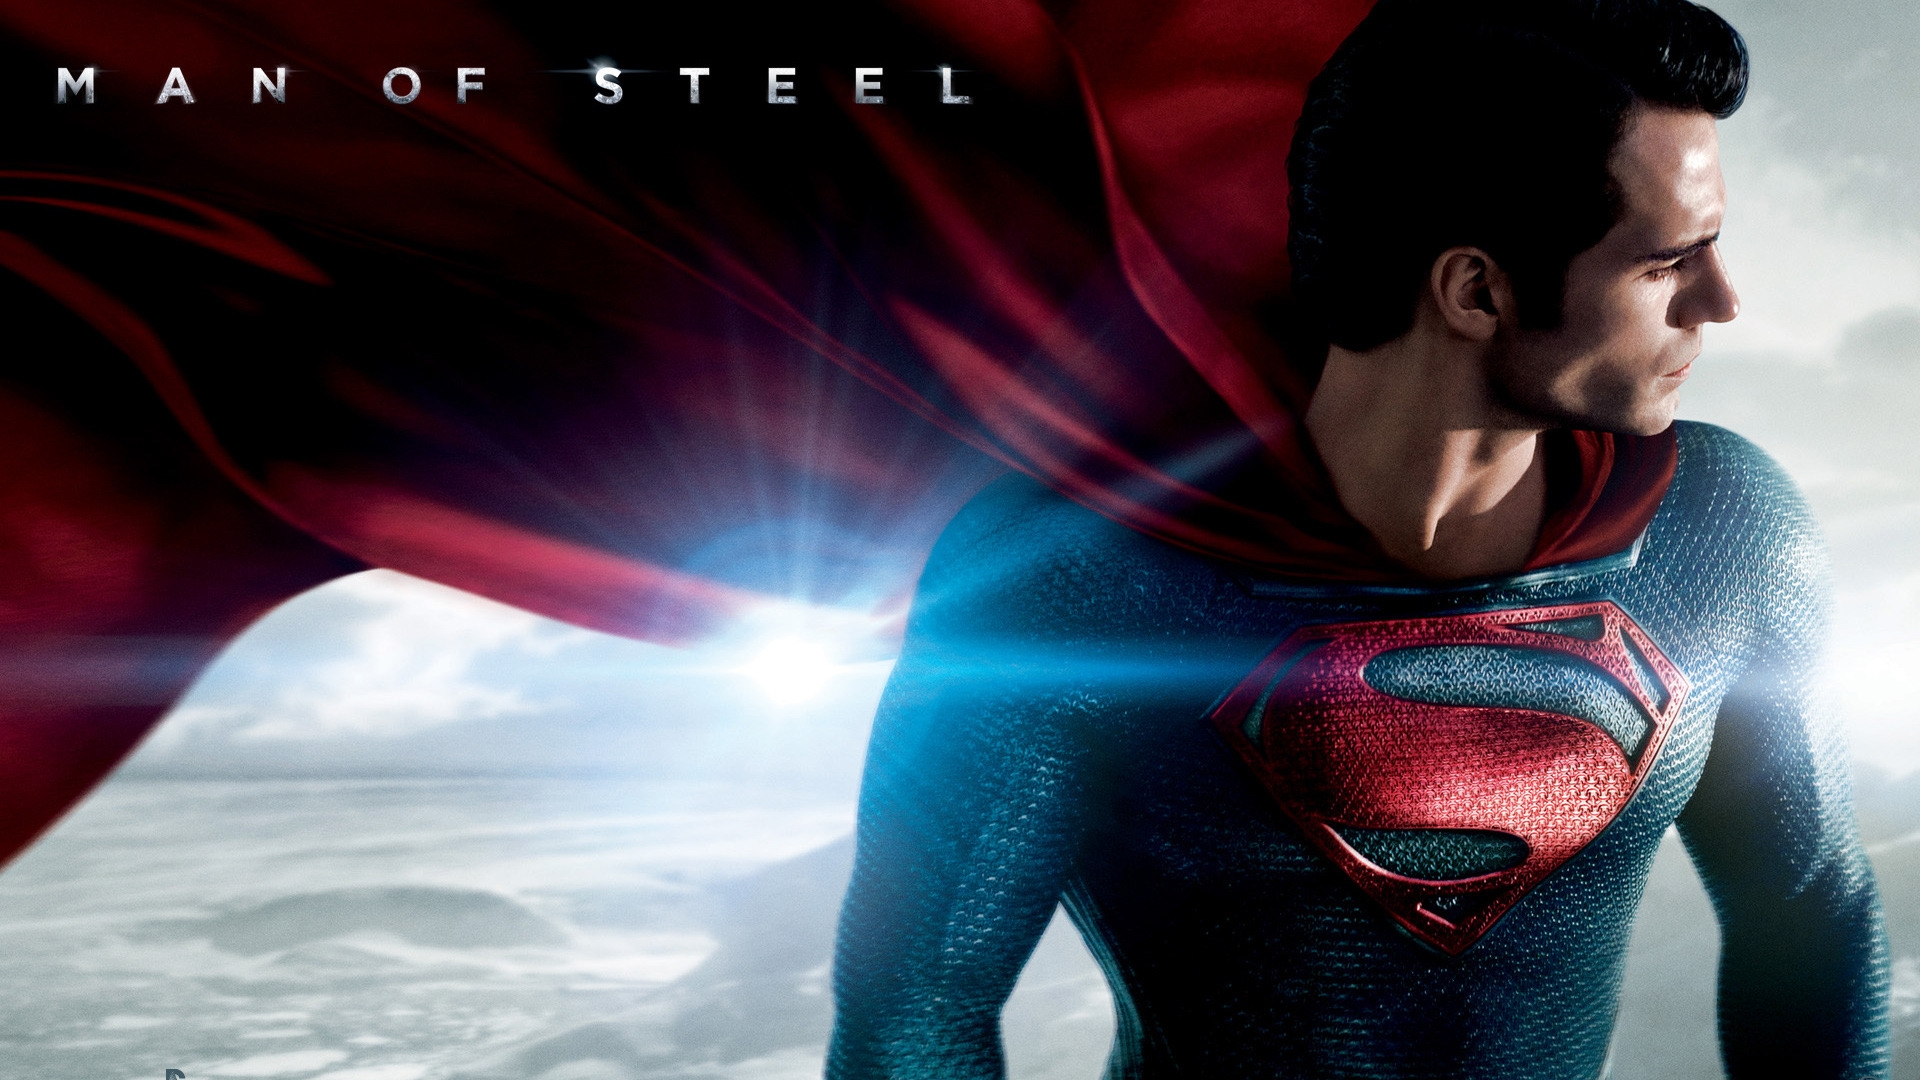 Kal-El Man of Steel for 1920 x 1080 HDTV 1080p resolution